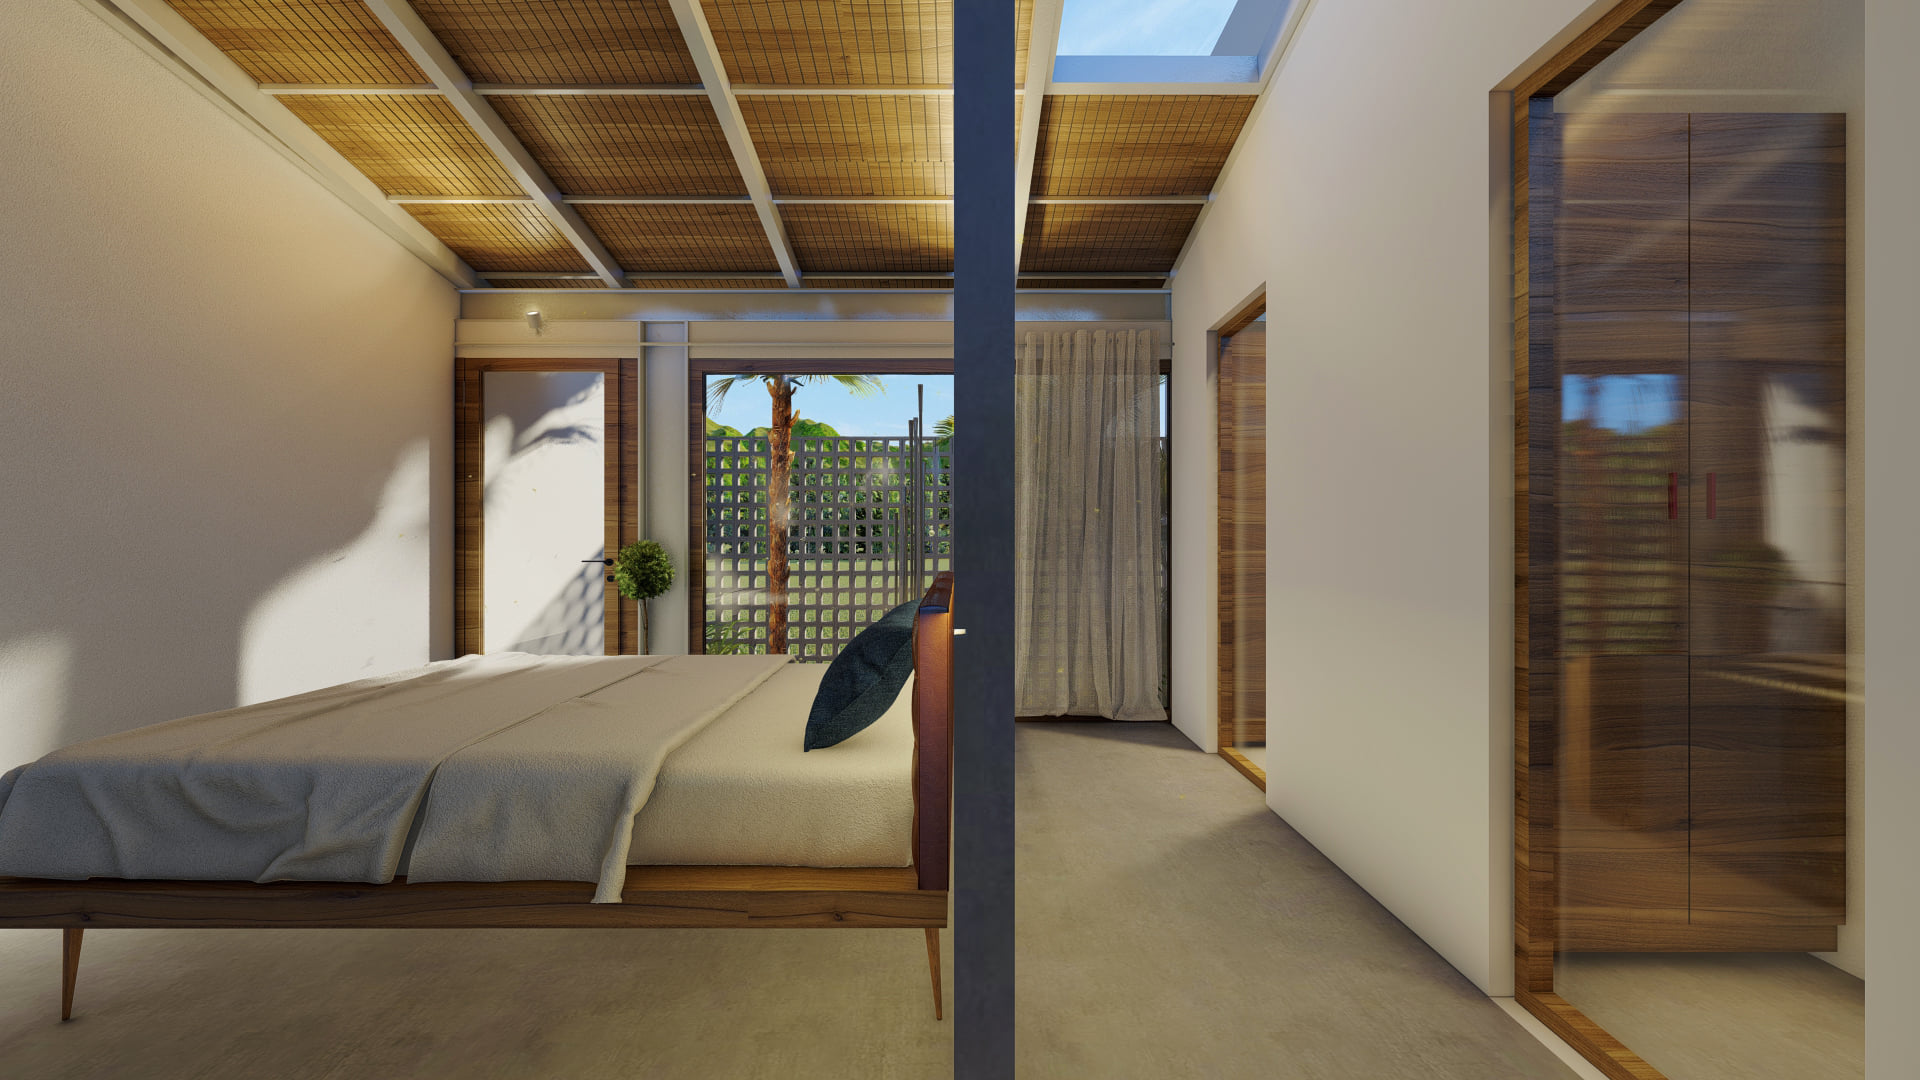 Phòng ngủ được thiết kế đơn giản với nội thất bằng gỗ kết hợp tường kính tạo không gian nghỉ ngơi ấn tượng tinh tế